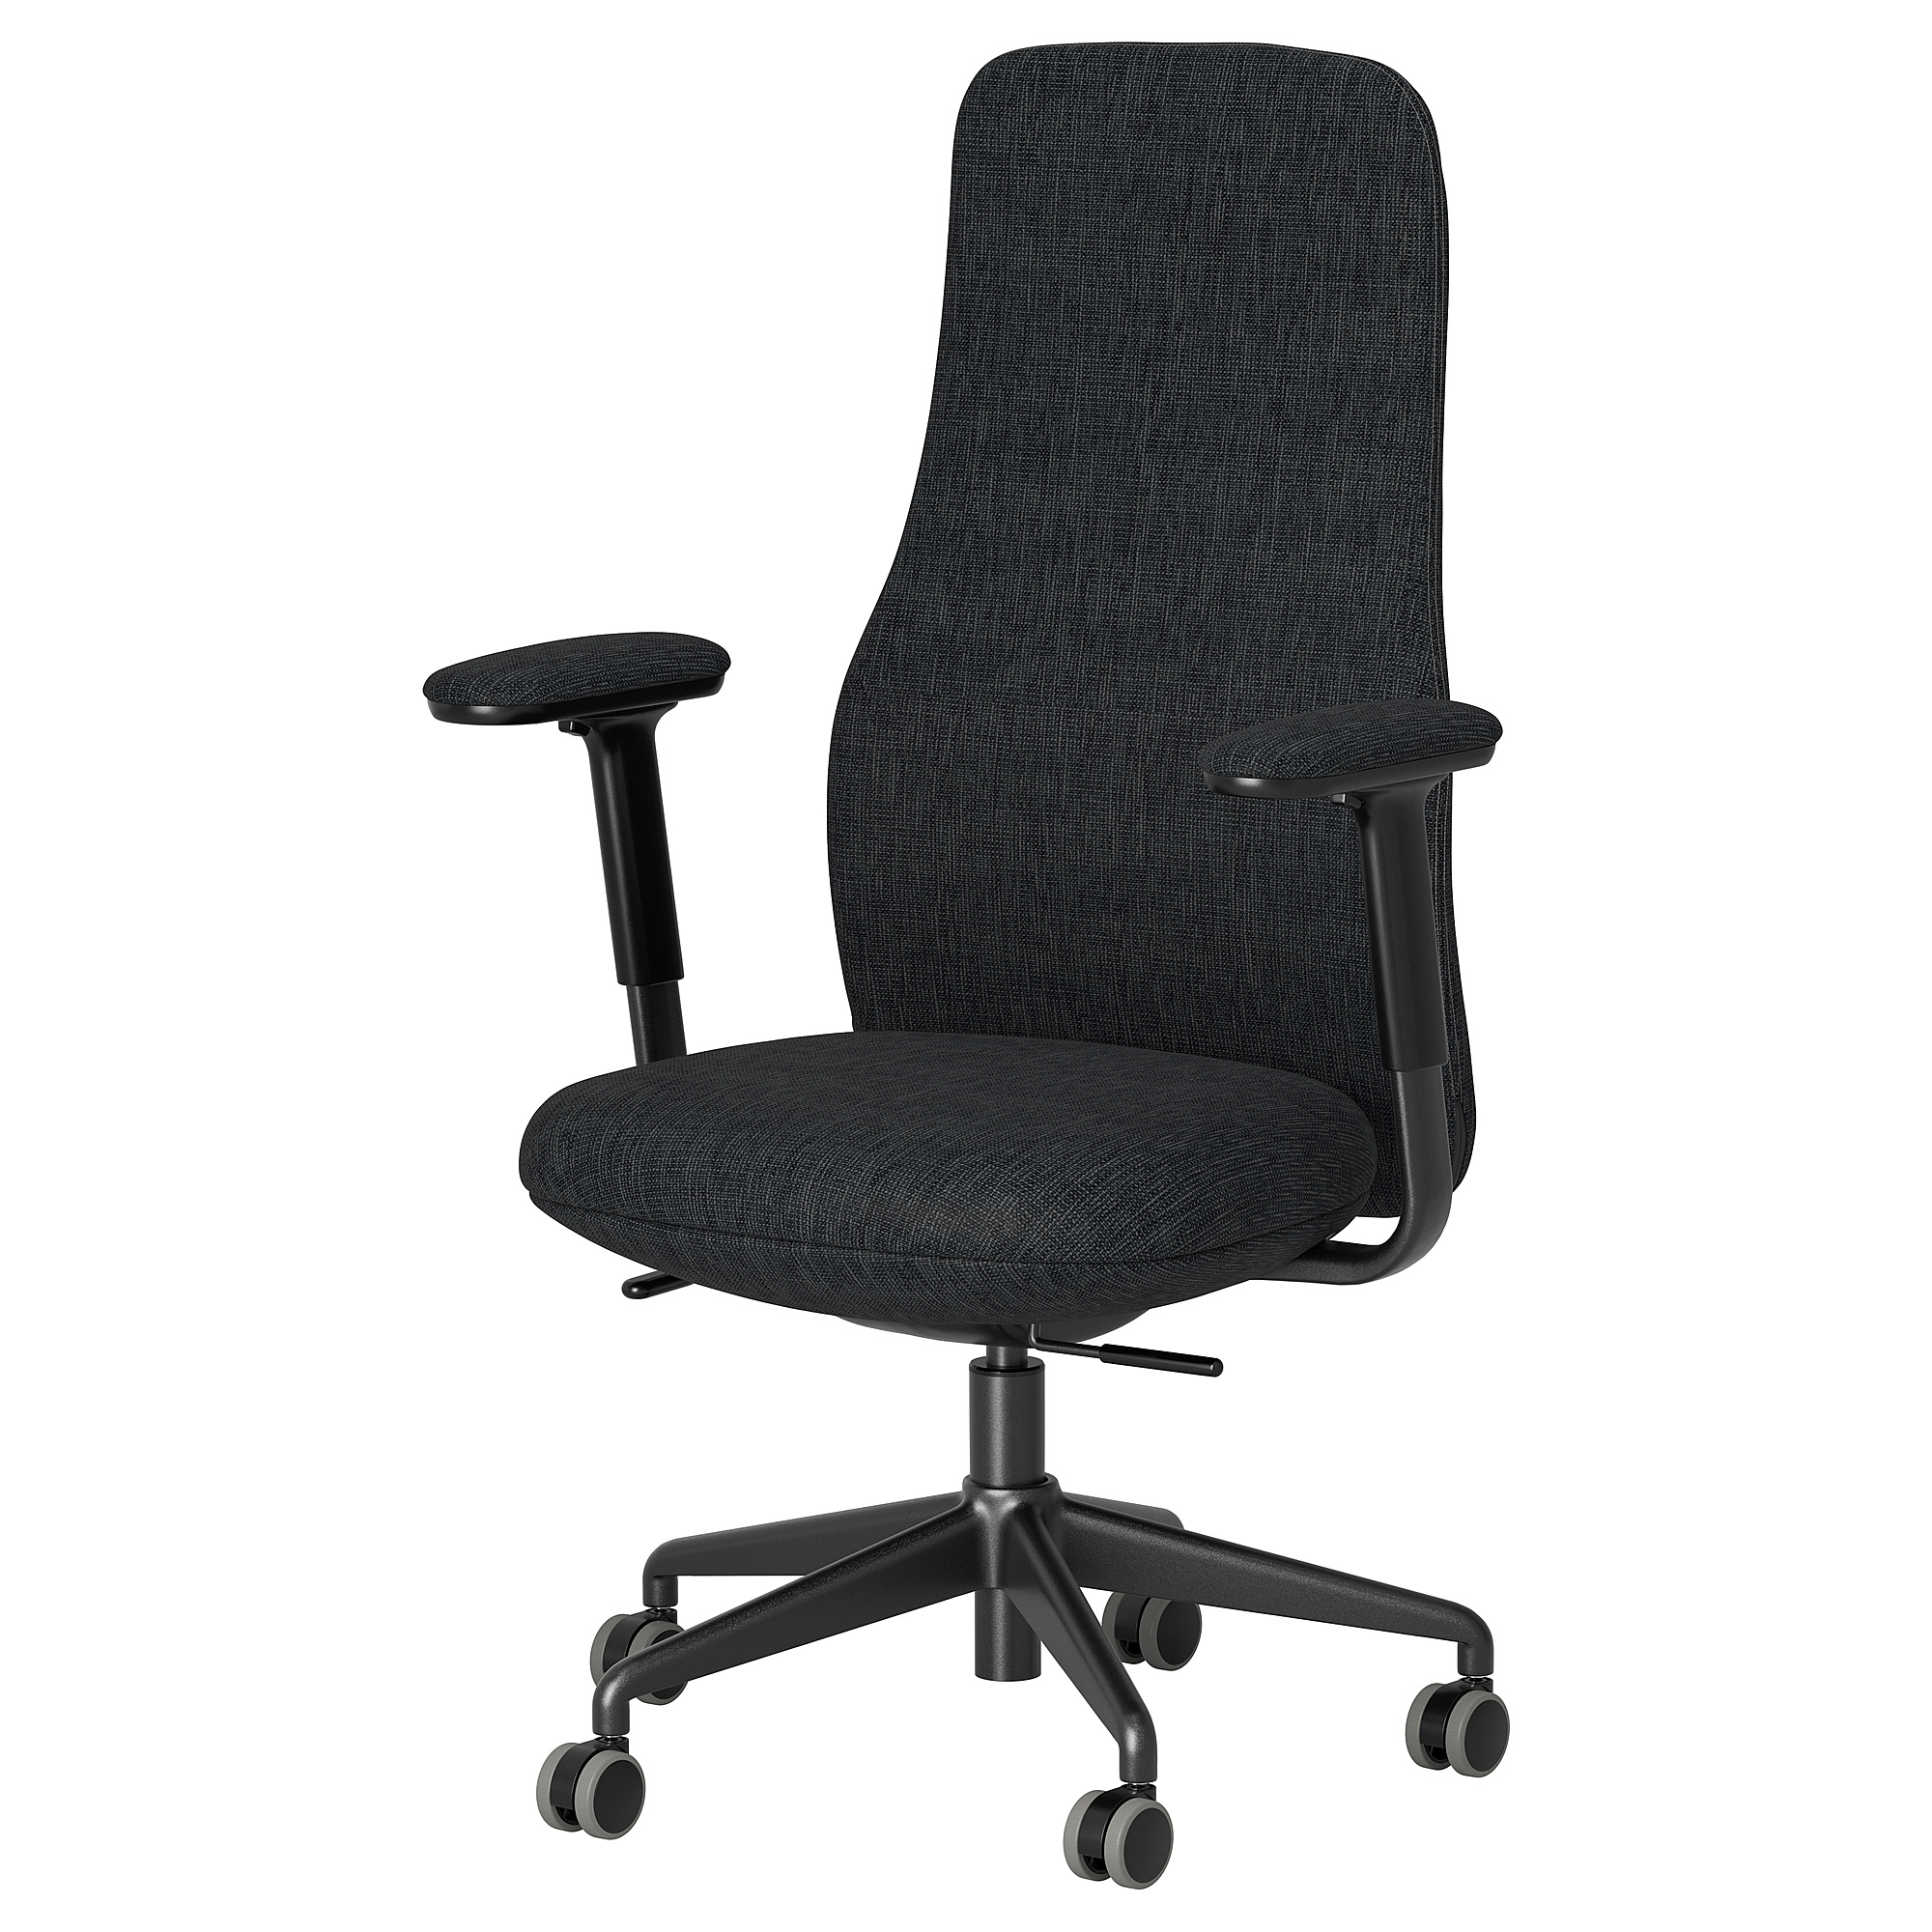 GRÖNFJÄLL office chair with armrests